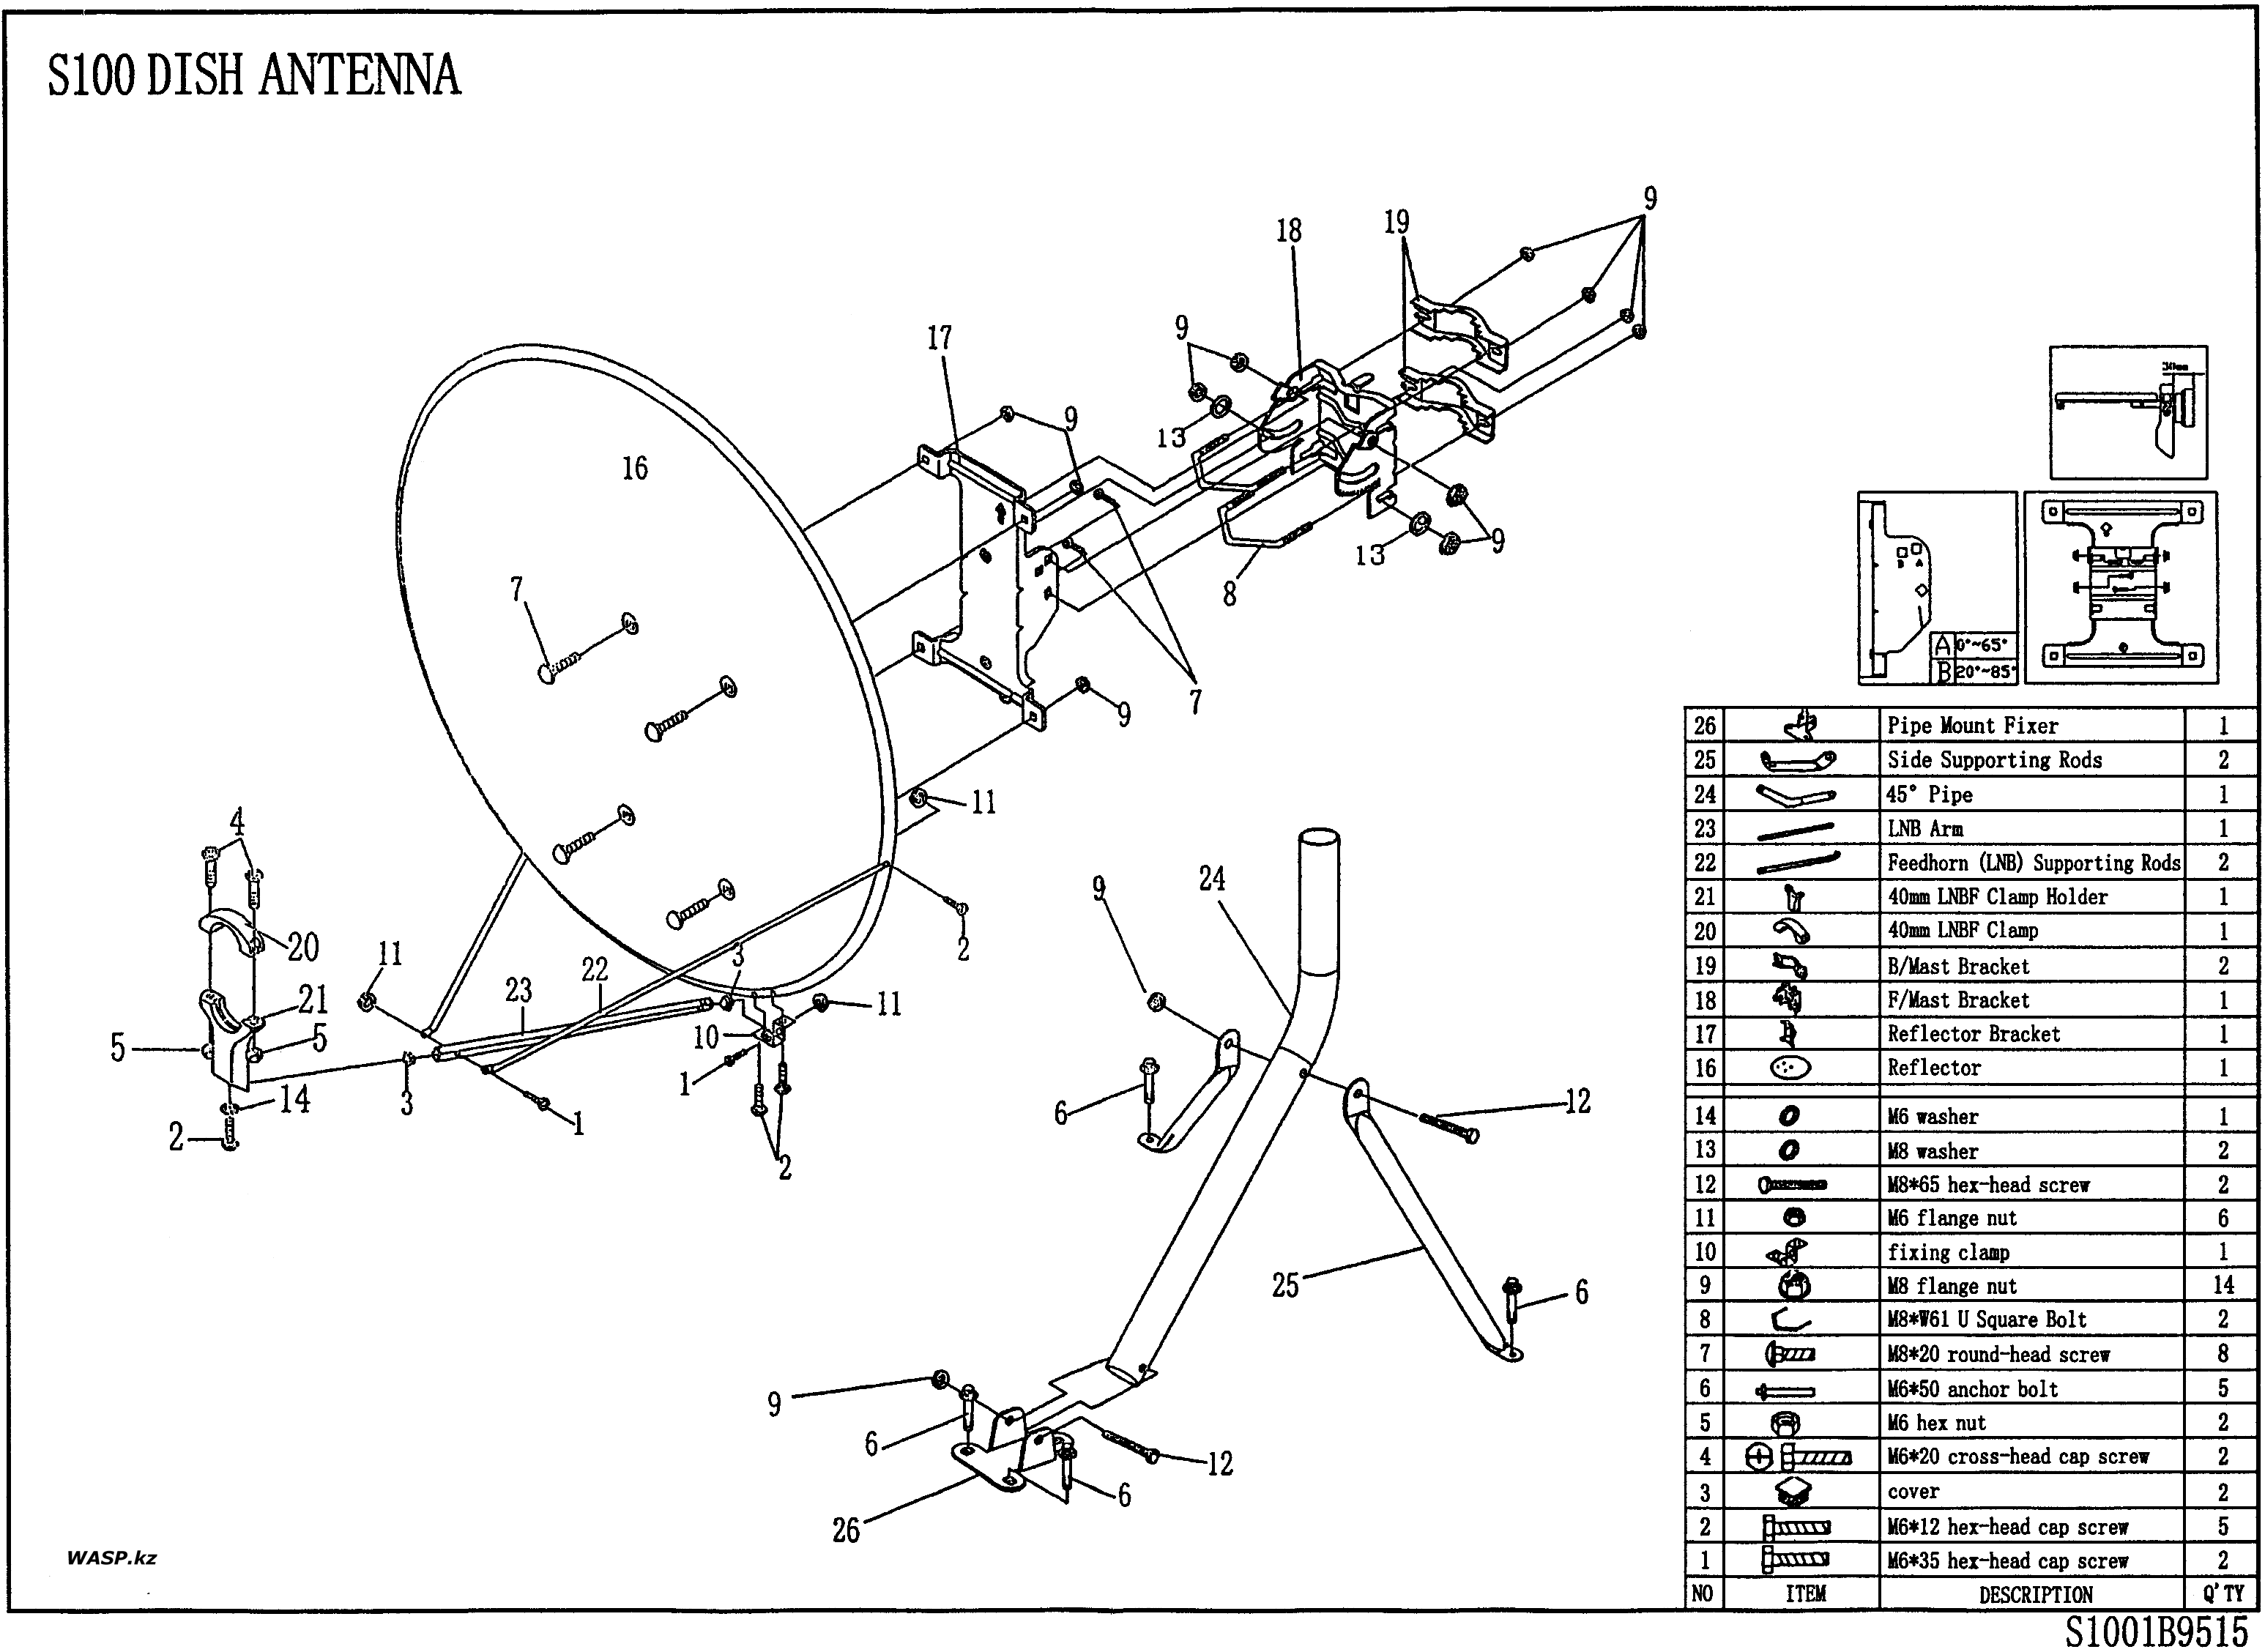 Svec инструкция по сборке спутниковой антенны